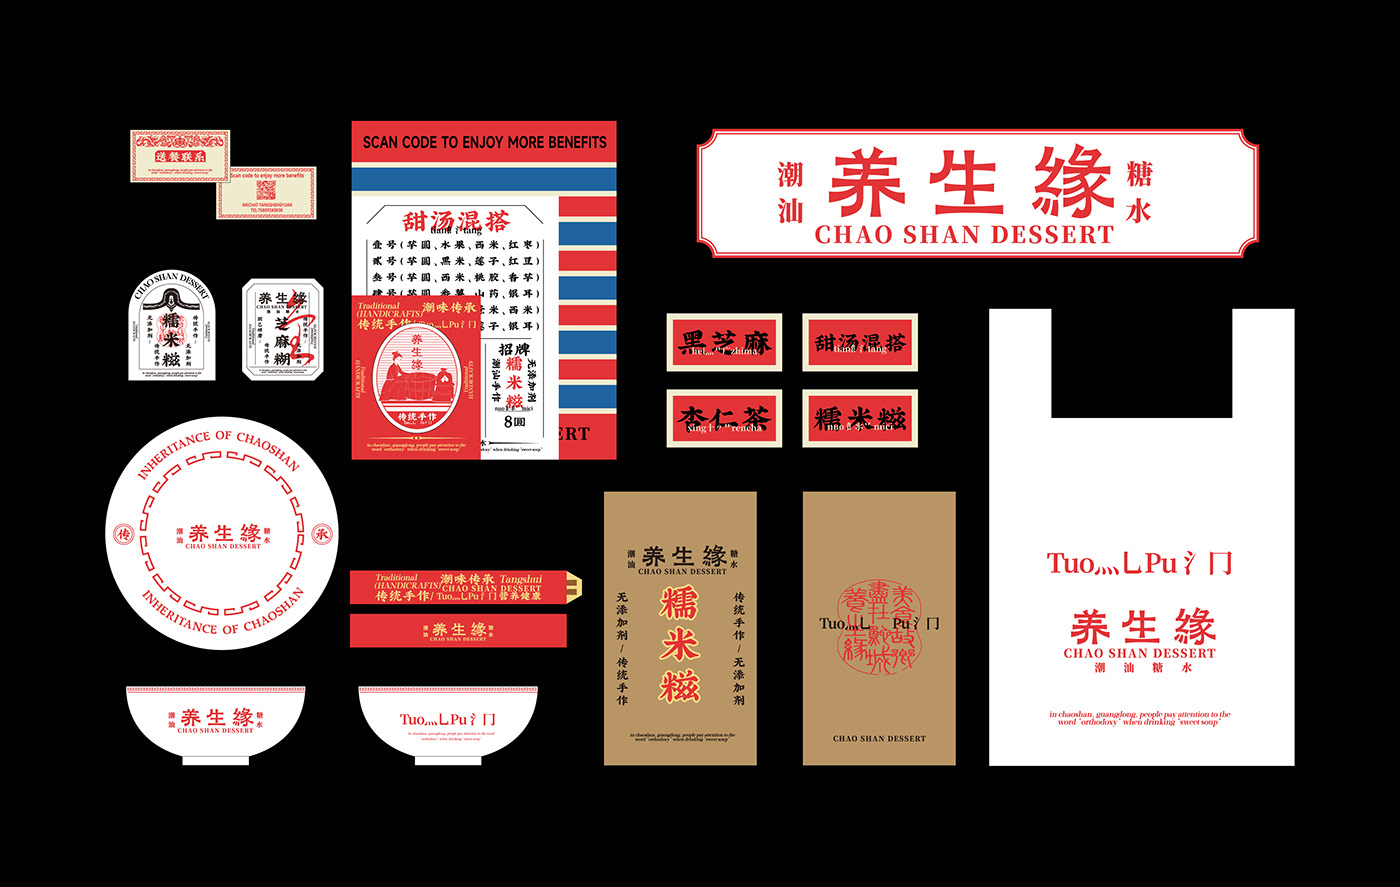 Brand Design brand identity identity logo Logo Design Poster Design visual visual identity 潮汕